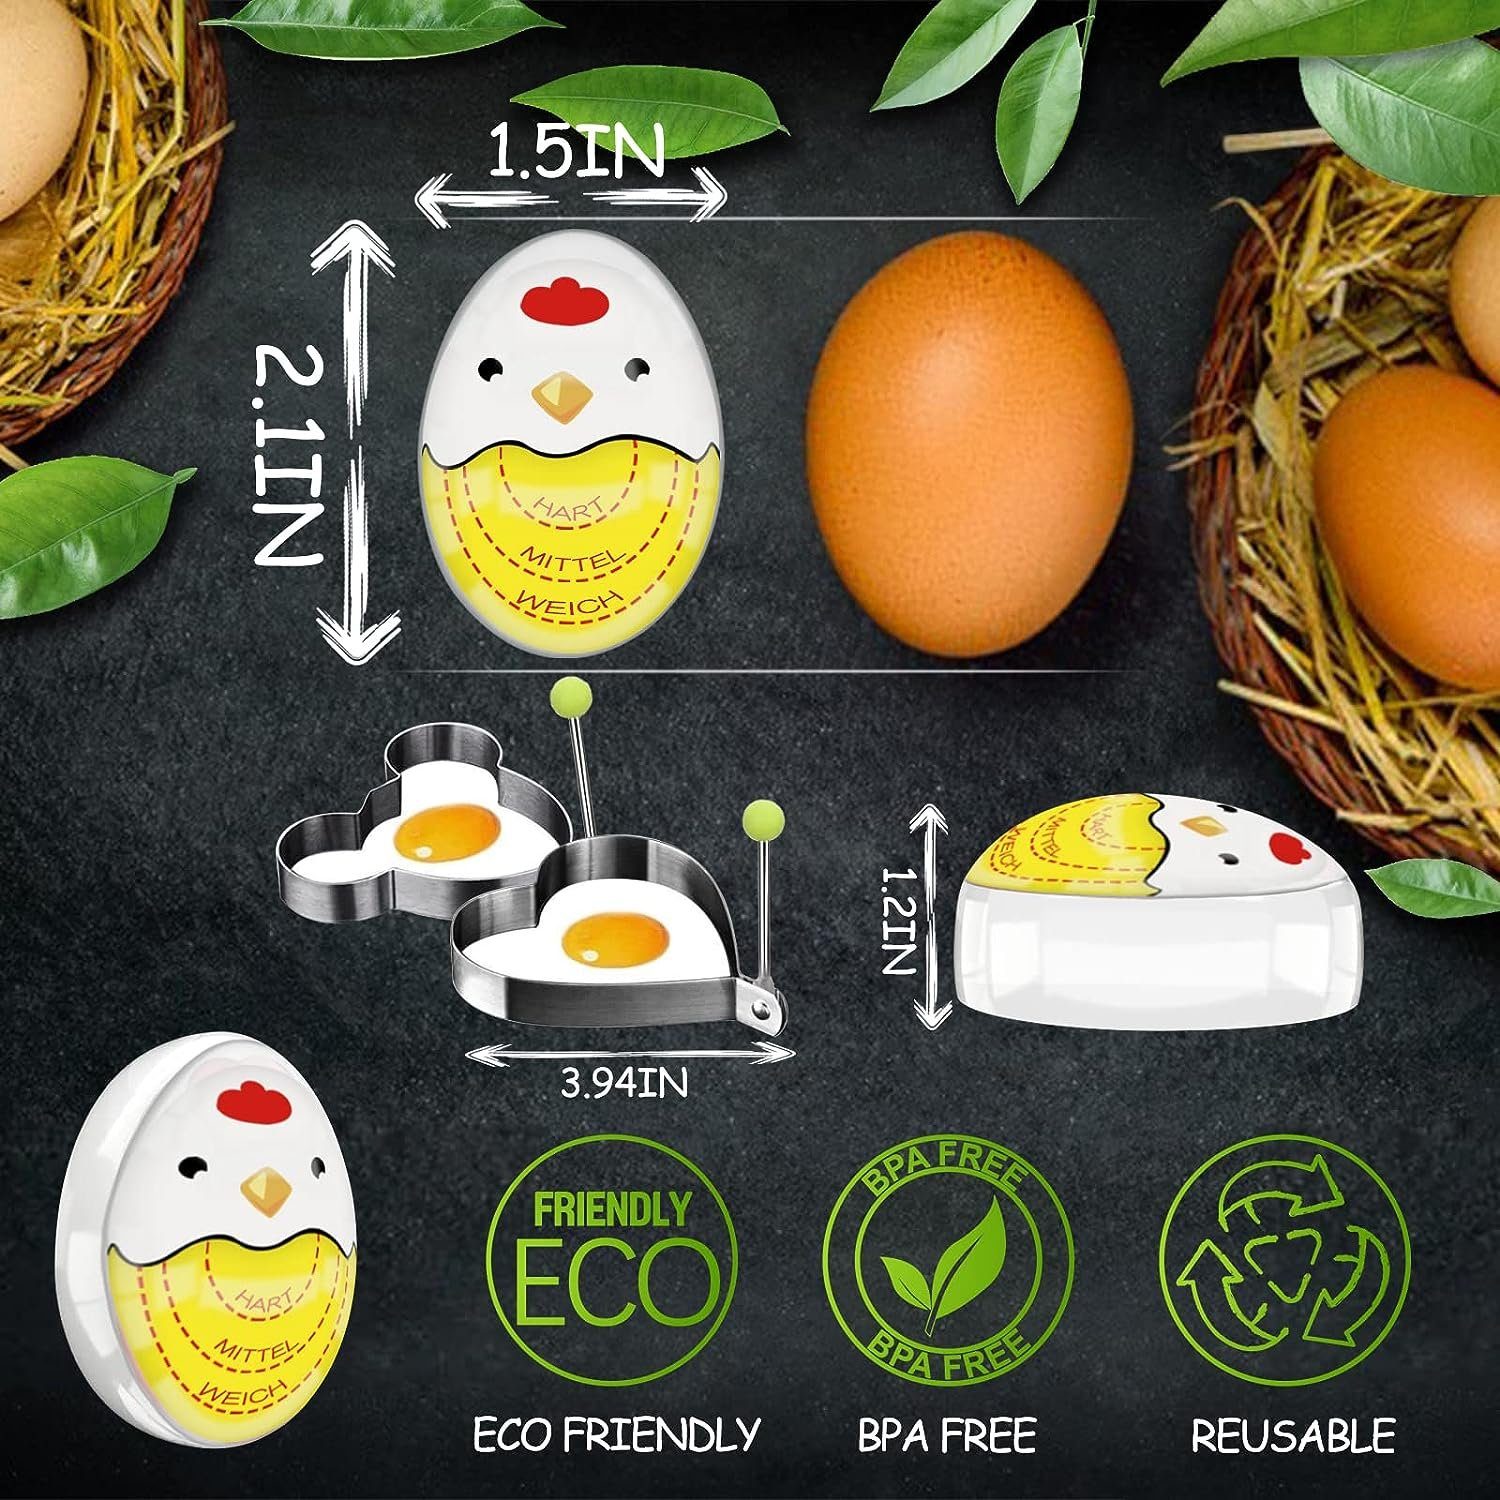 autolock Eieruhr,Egg Anzeige für Farbwechsel, Eier, lustiger Eieruhr gekochte Gelb hart/medium/weich,wiederverwendbar Timer Eierkocher,Timer mit